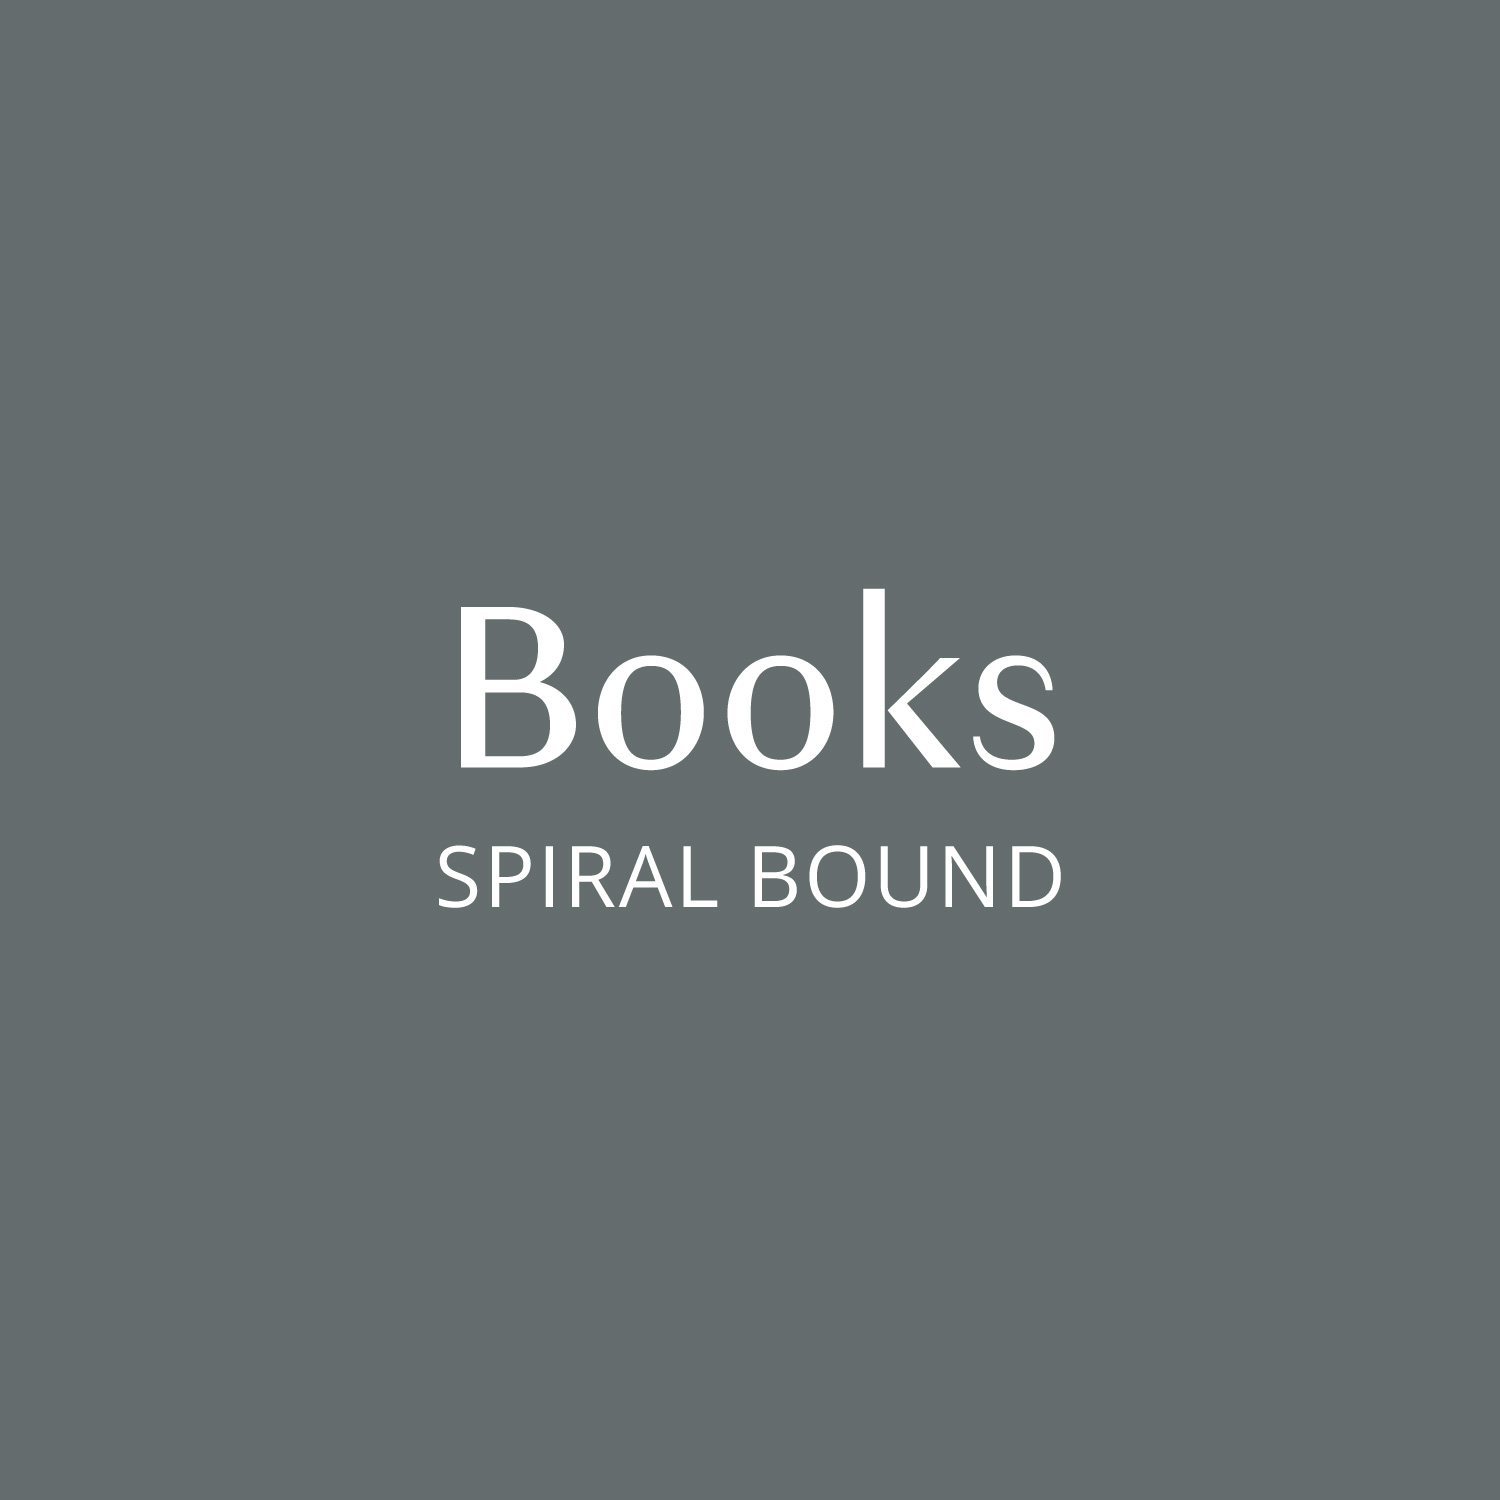 Books (Spiral Bound)